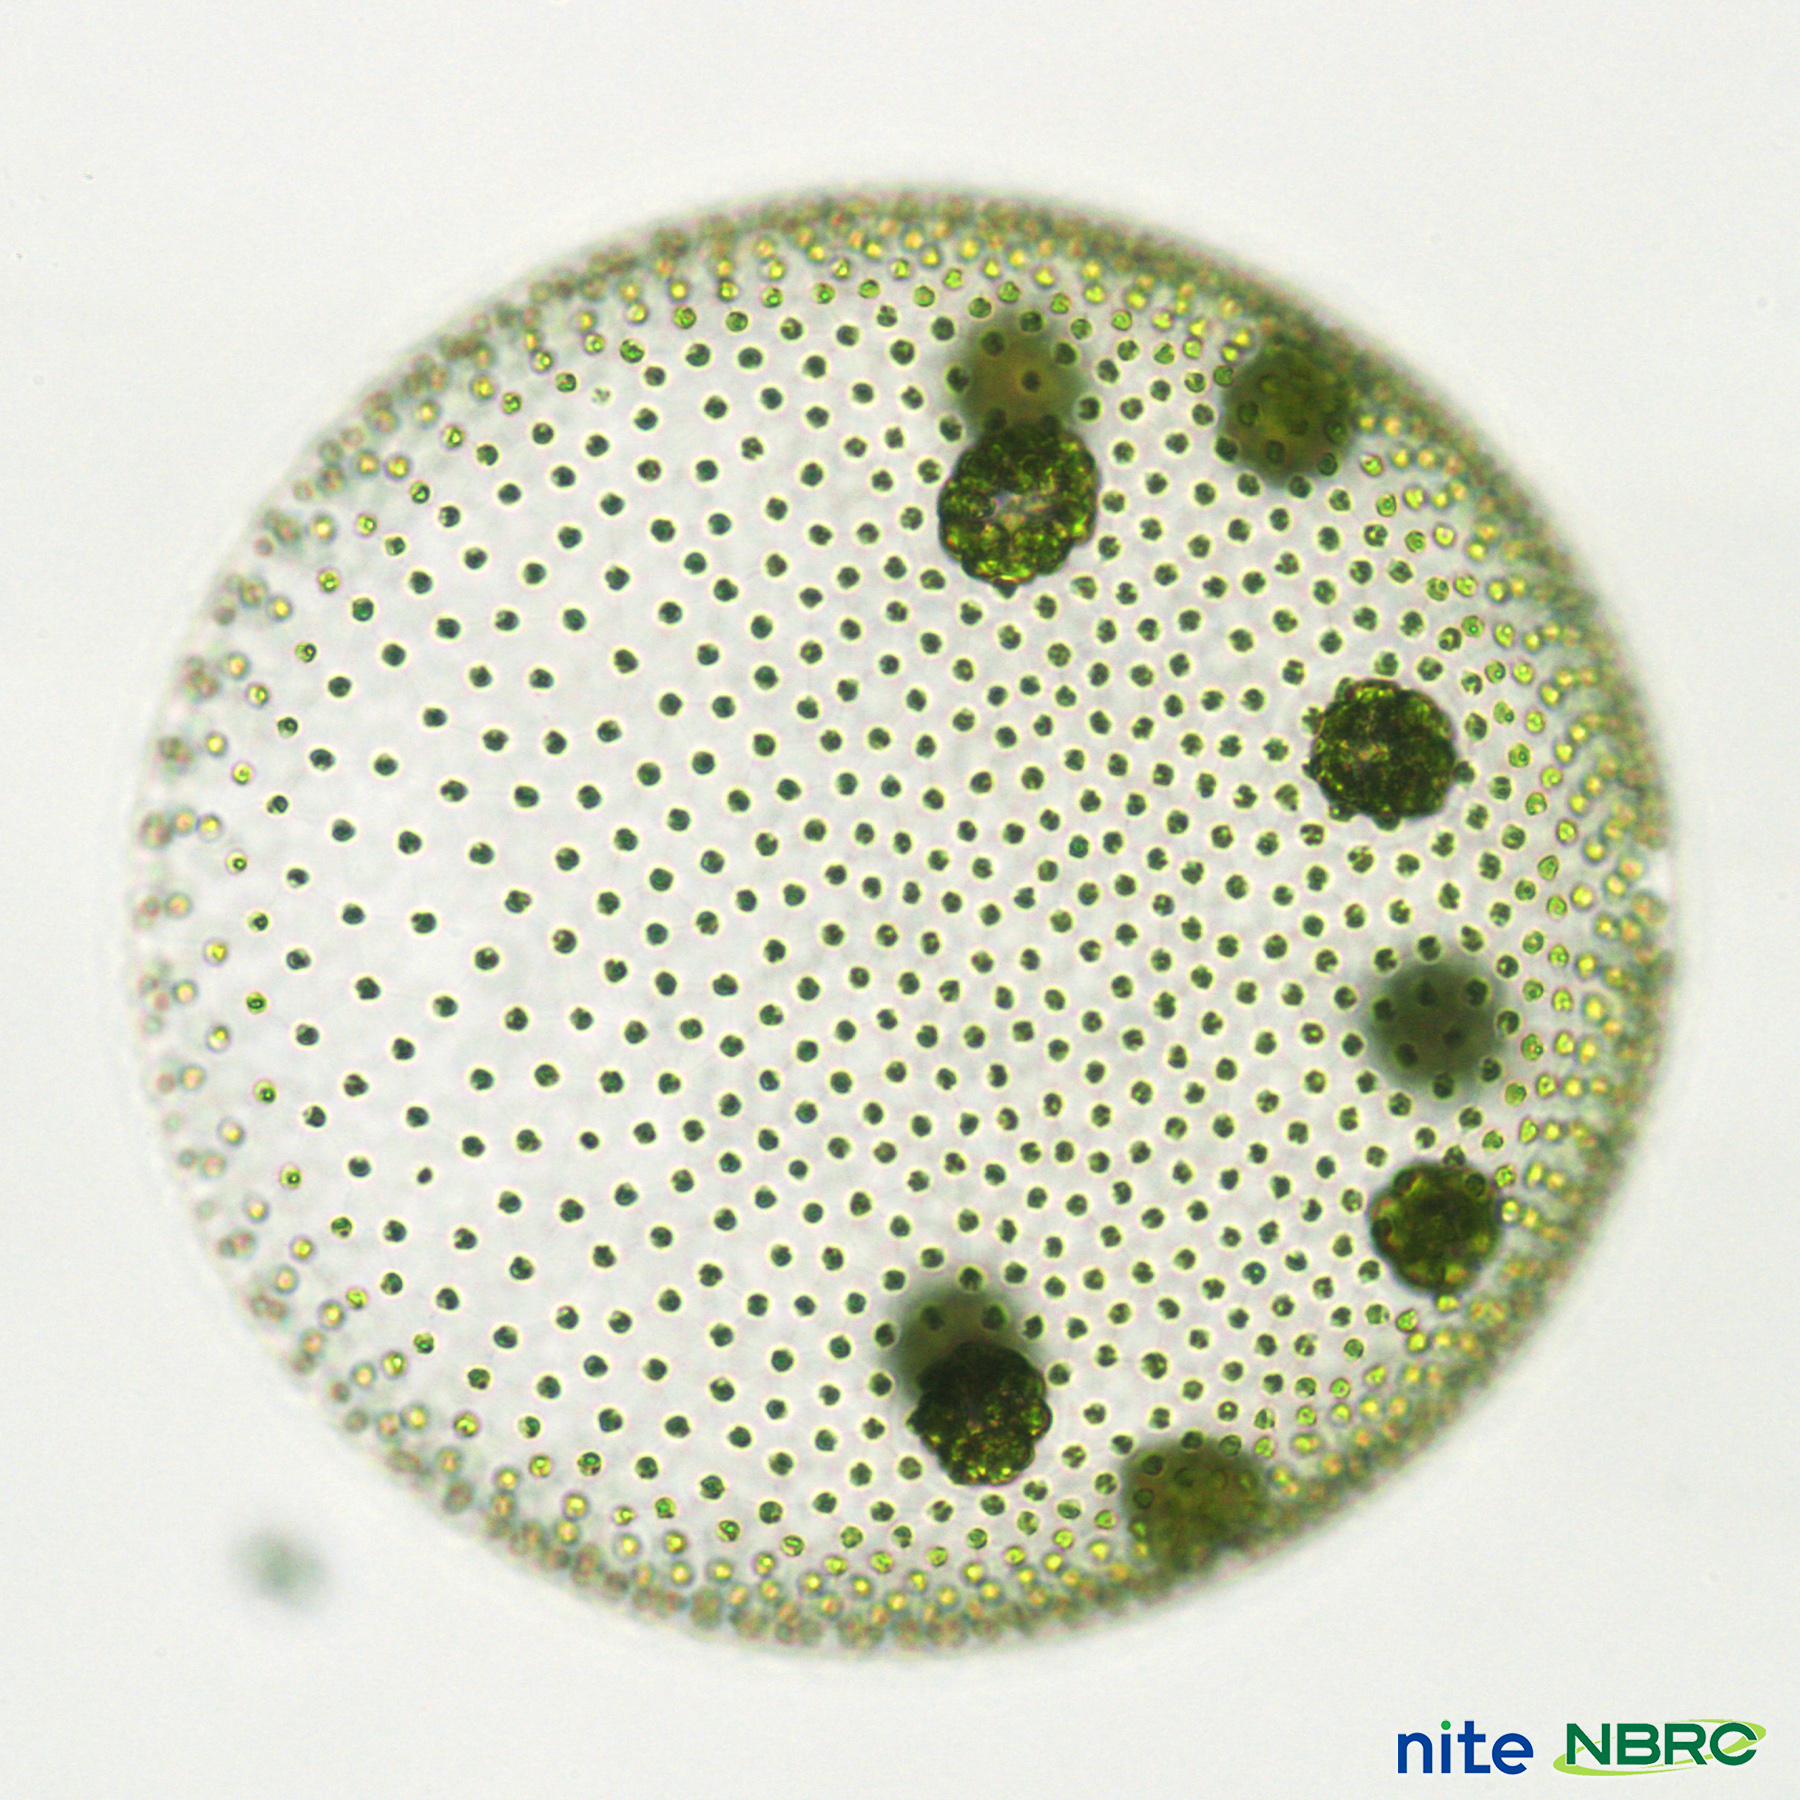 Microbio Pa Twitter 毎日微生物 ボルボックス Volvox Sp 池や田んぼなど水のきれいな場所に生育 球体は数千個の細胞がつながっており内部は中空になっています 細胞のべん毛を動かすことで光に向かって泳ぐことができます 直径 0 5mm程